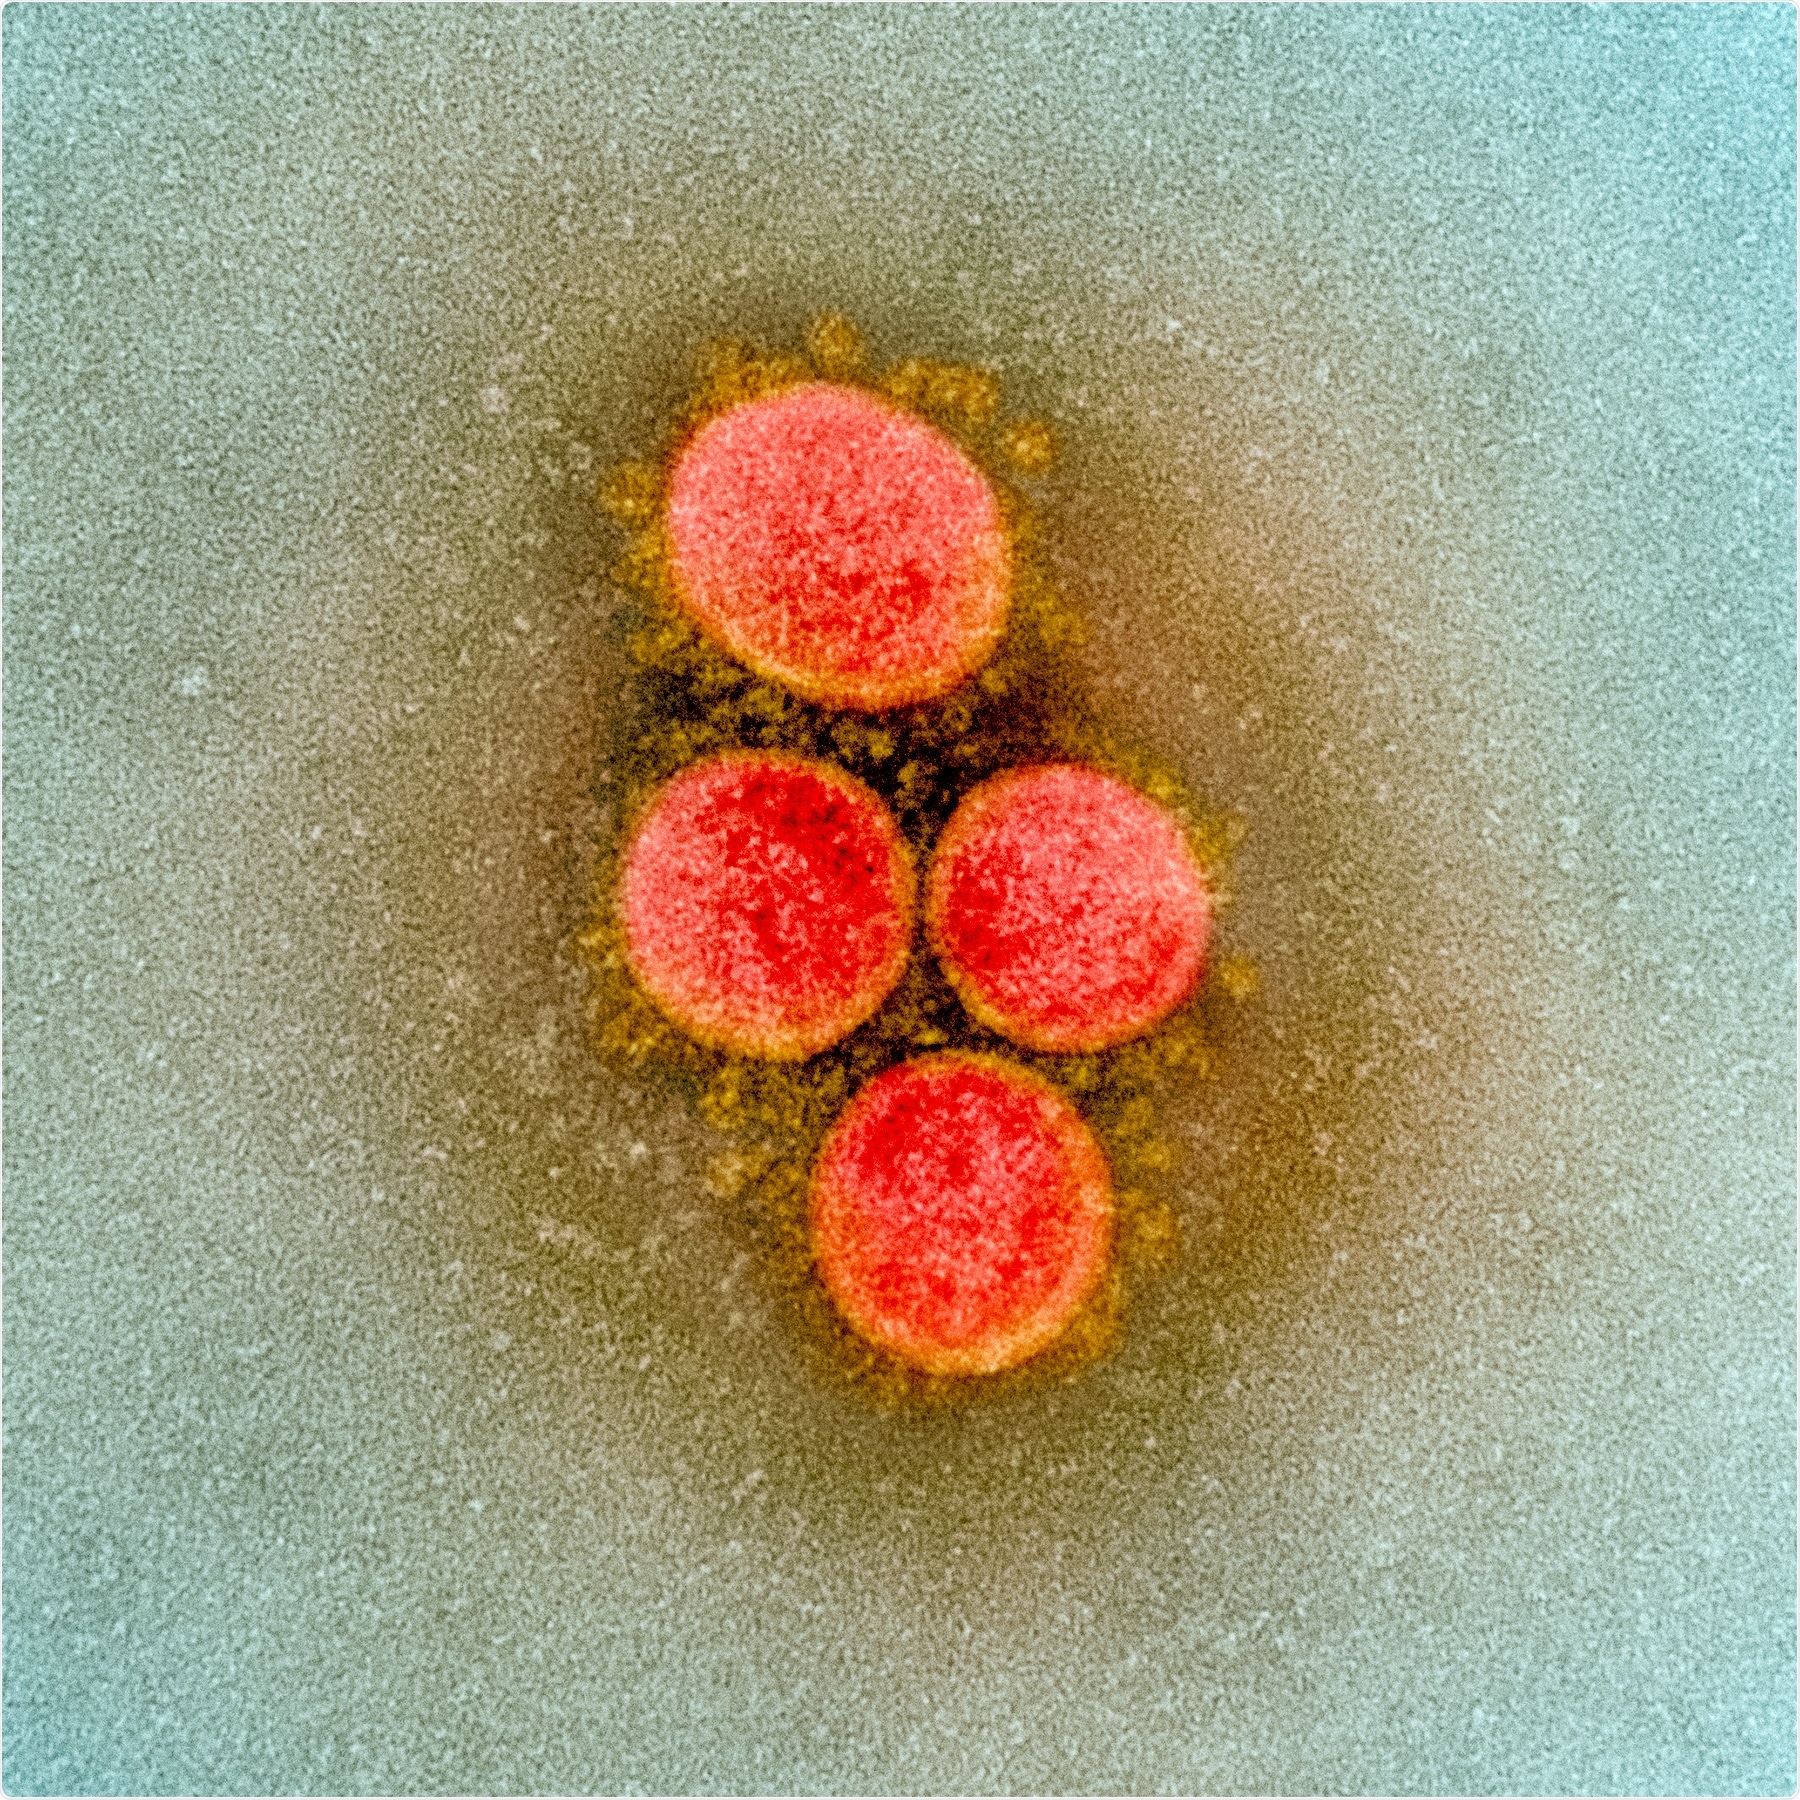 Studio: Emergenza delle mutazioni multiple SARS-CoV-2 in un host immunocompromised. Credito di immagine: NIAID